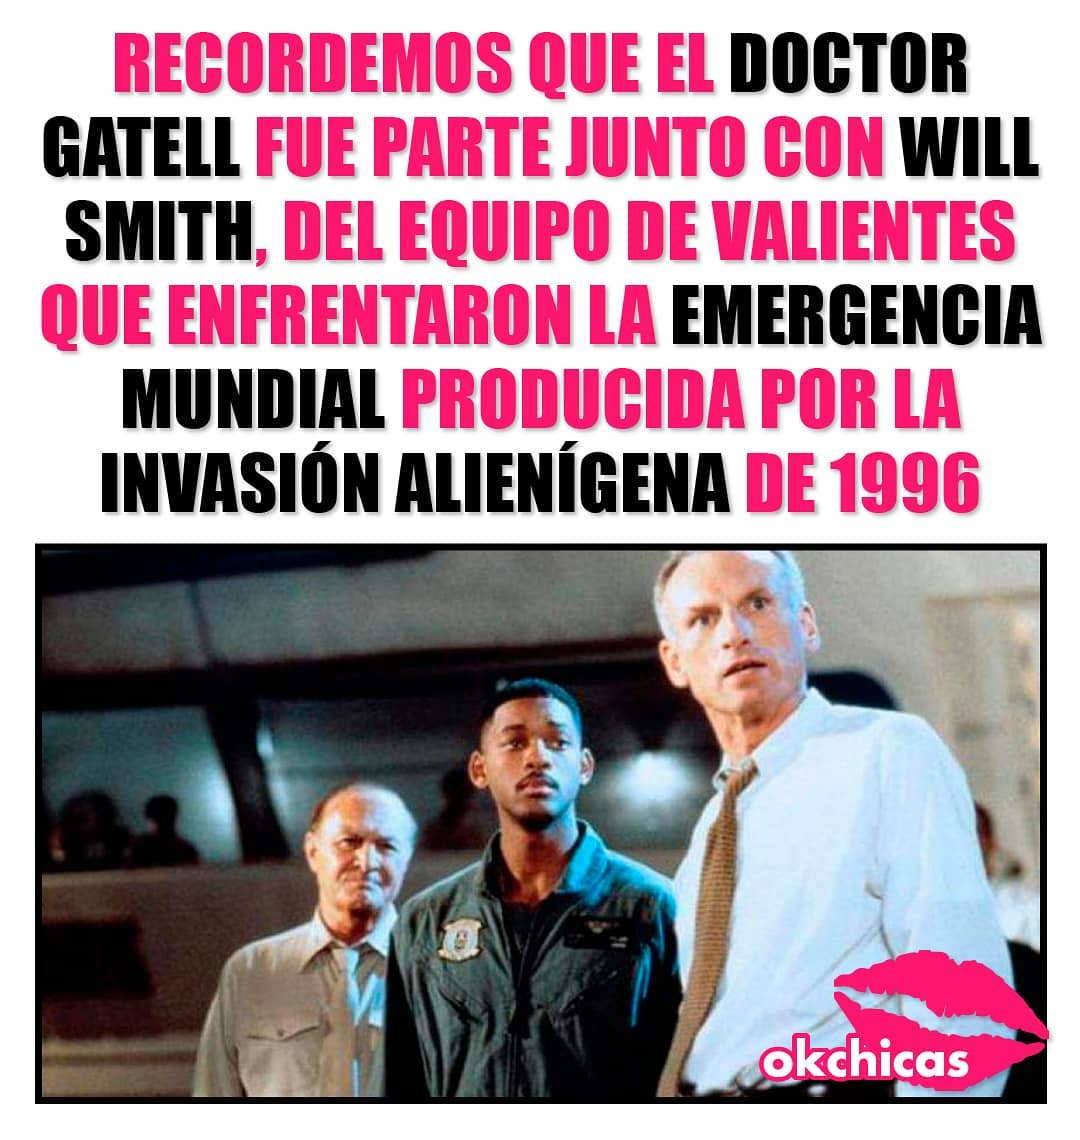 Recordemos que el doctor Gatell fue junto con Will Smith, del equipo de valientes que enfrentaron la emergencia mundial producida por la invasion alienígena de 1996.